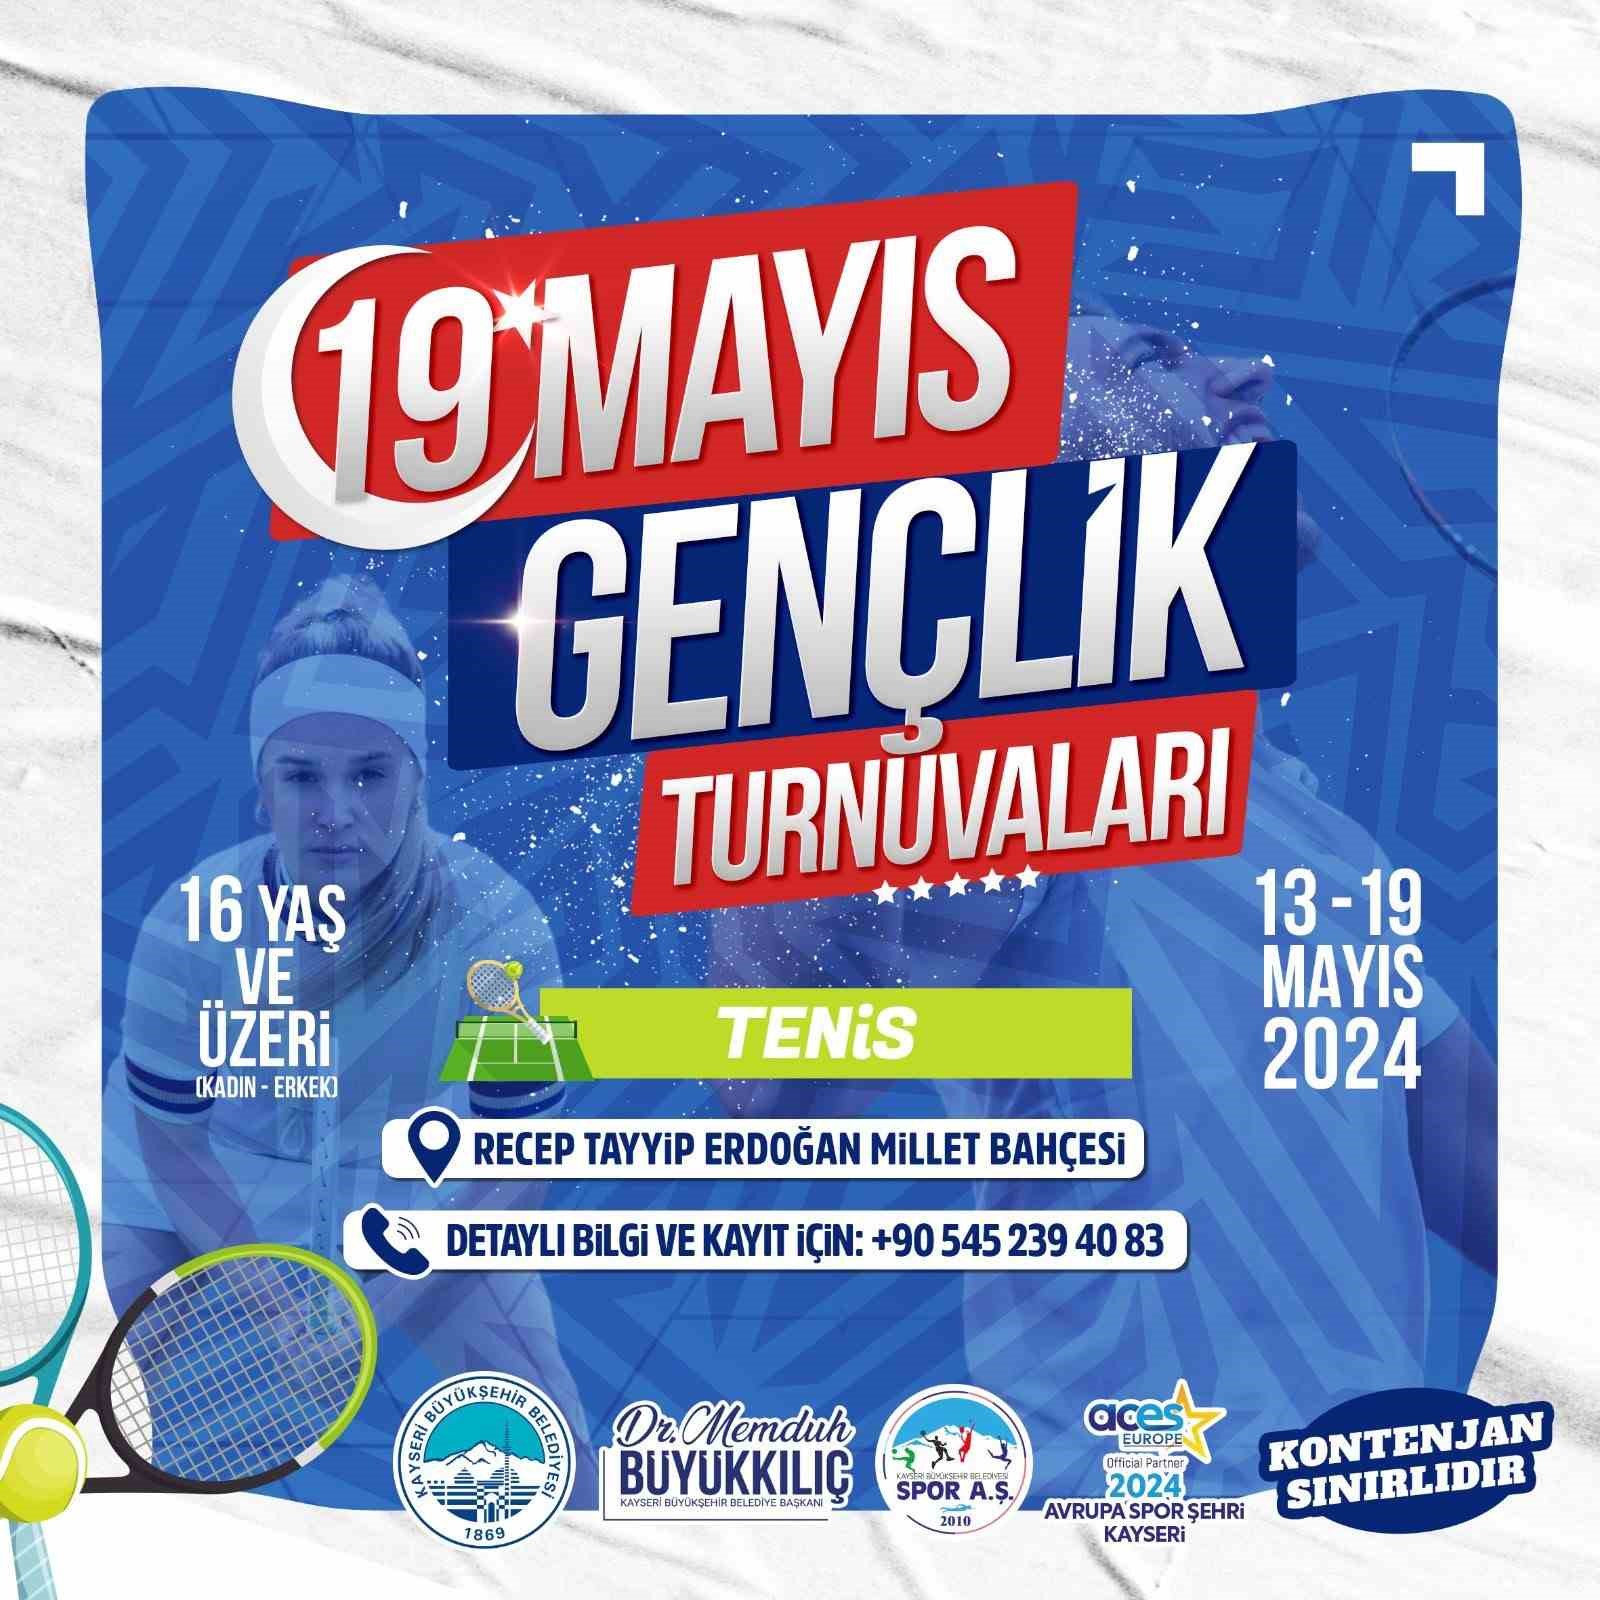 Büyükşehir Spor A.Ş.’nin 19 Mayıs Tenis Turnuvaları için kayıtlar başladı
